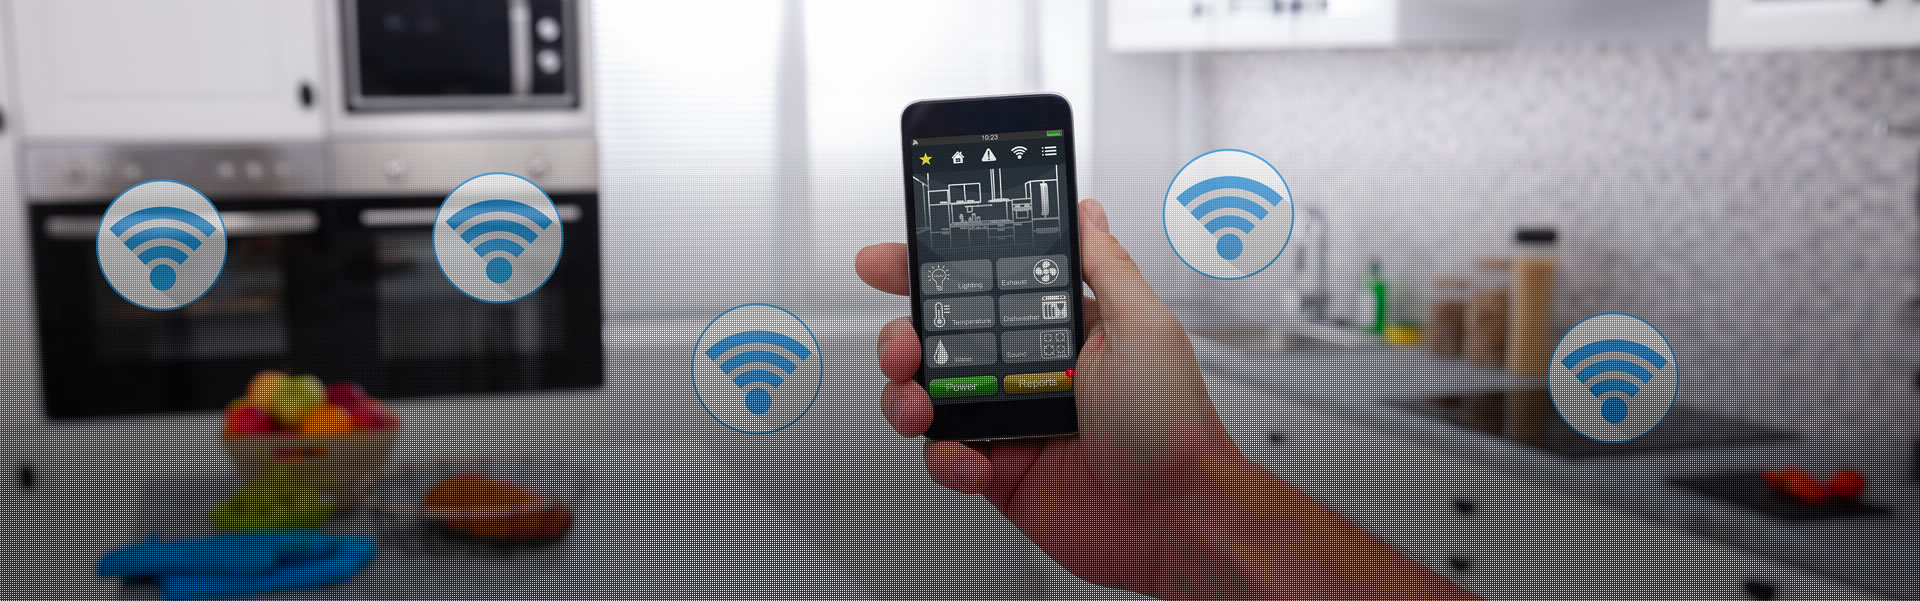 Elektriker für Smart Home Haussteuerung per App in Hagen Iserlohn oder Neuenrade